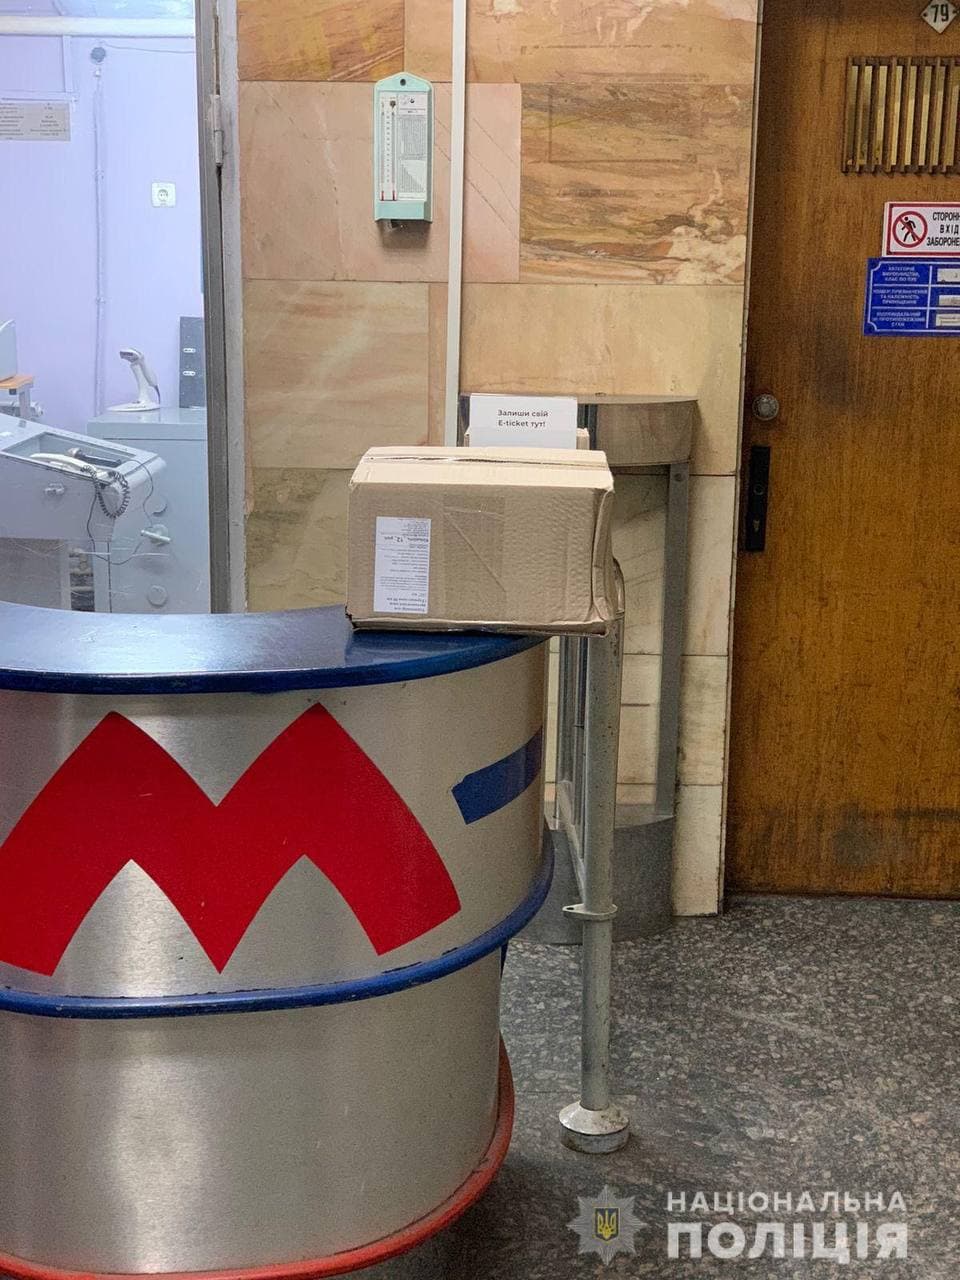 Подозрительная коробка: в Харькове закрывали станцию метро